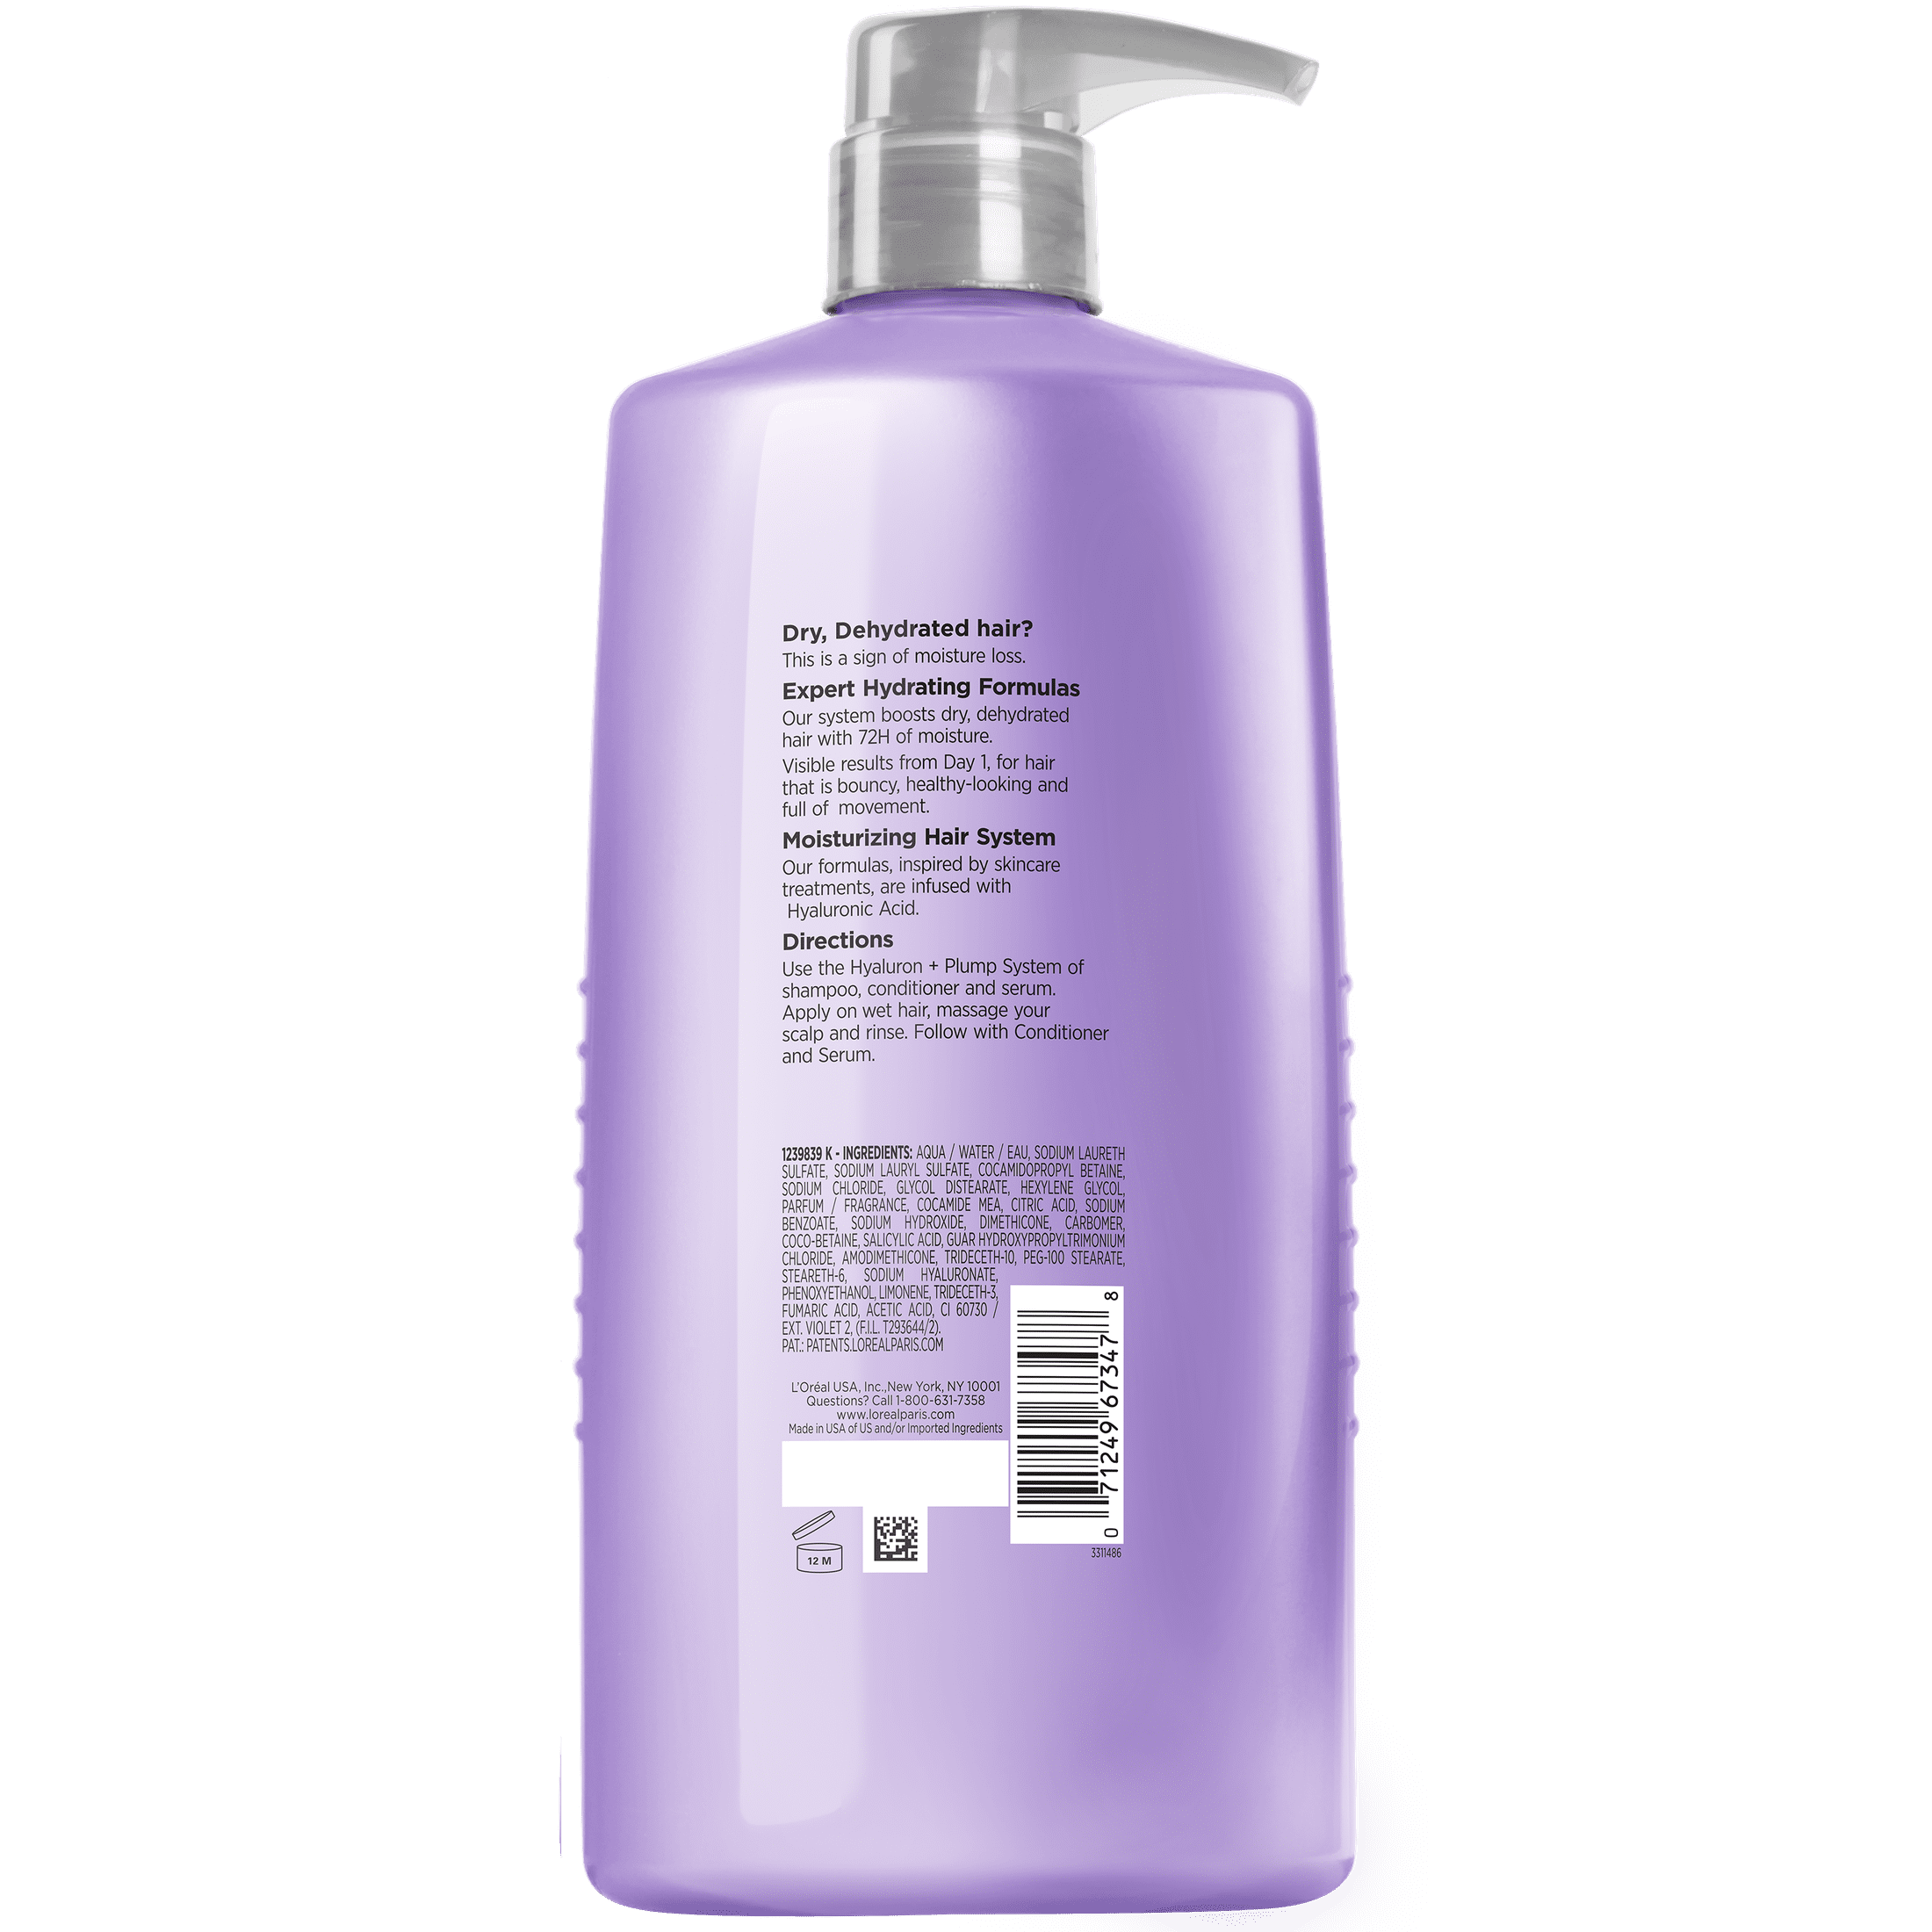 L'Oréal Elvive champú 500 ml. Fibralogy cabello con poca densidad